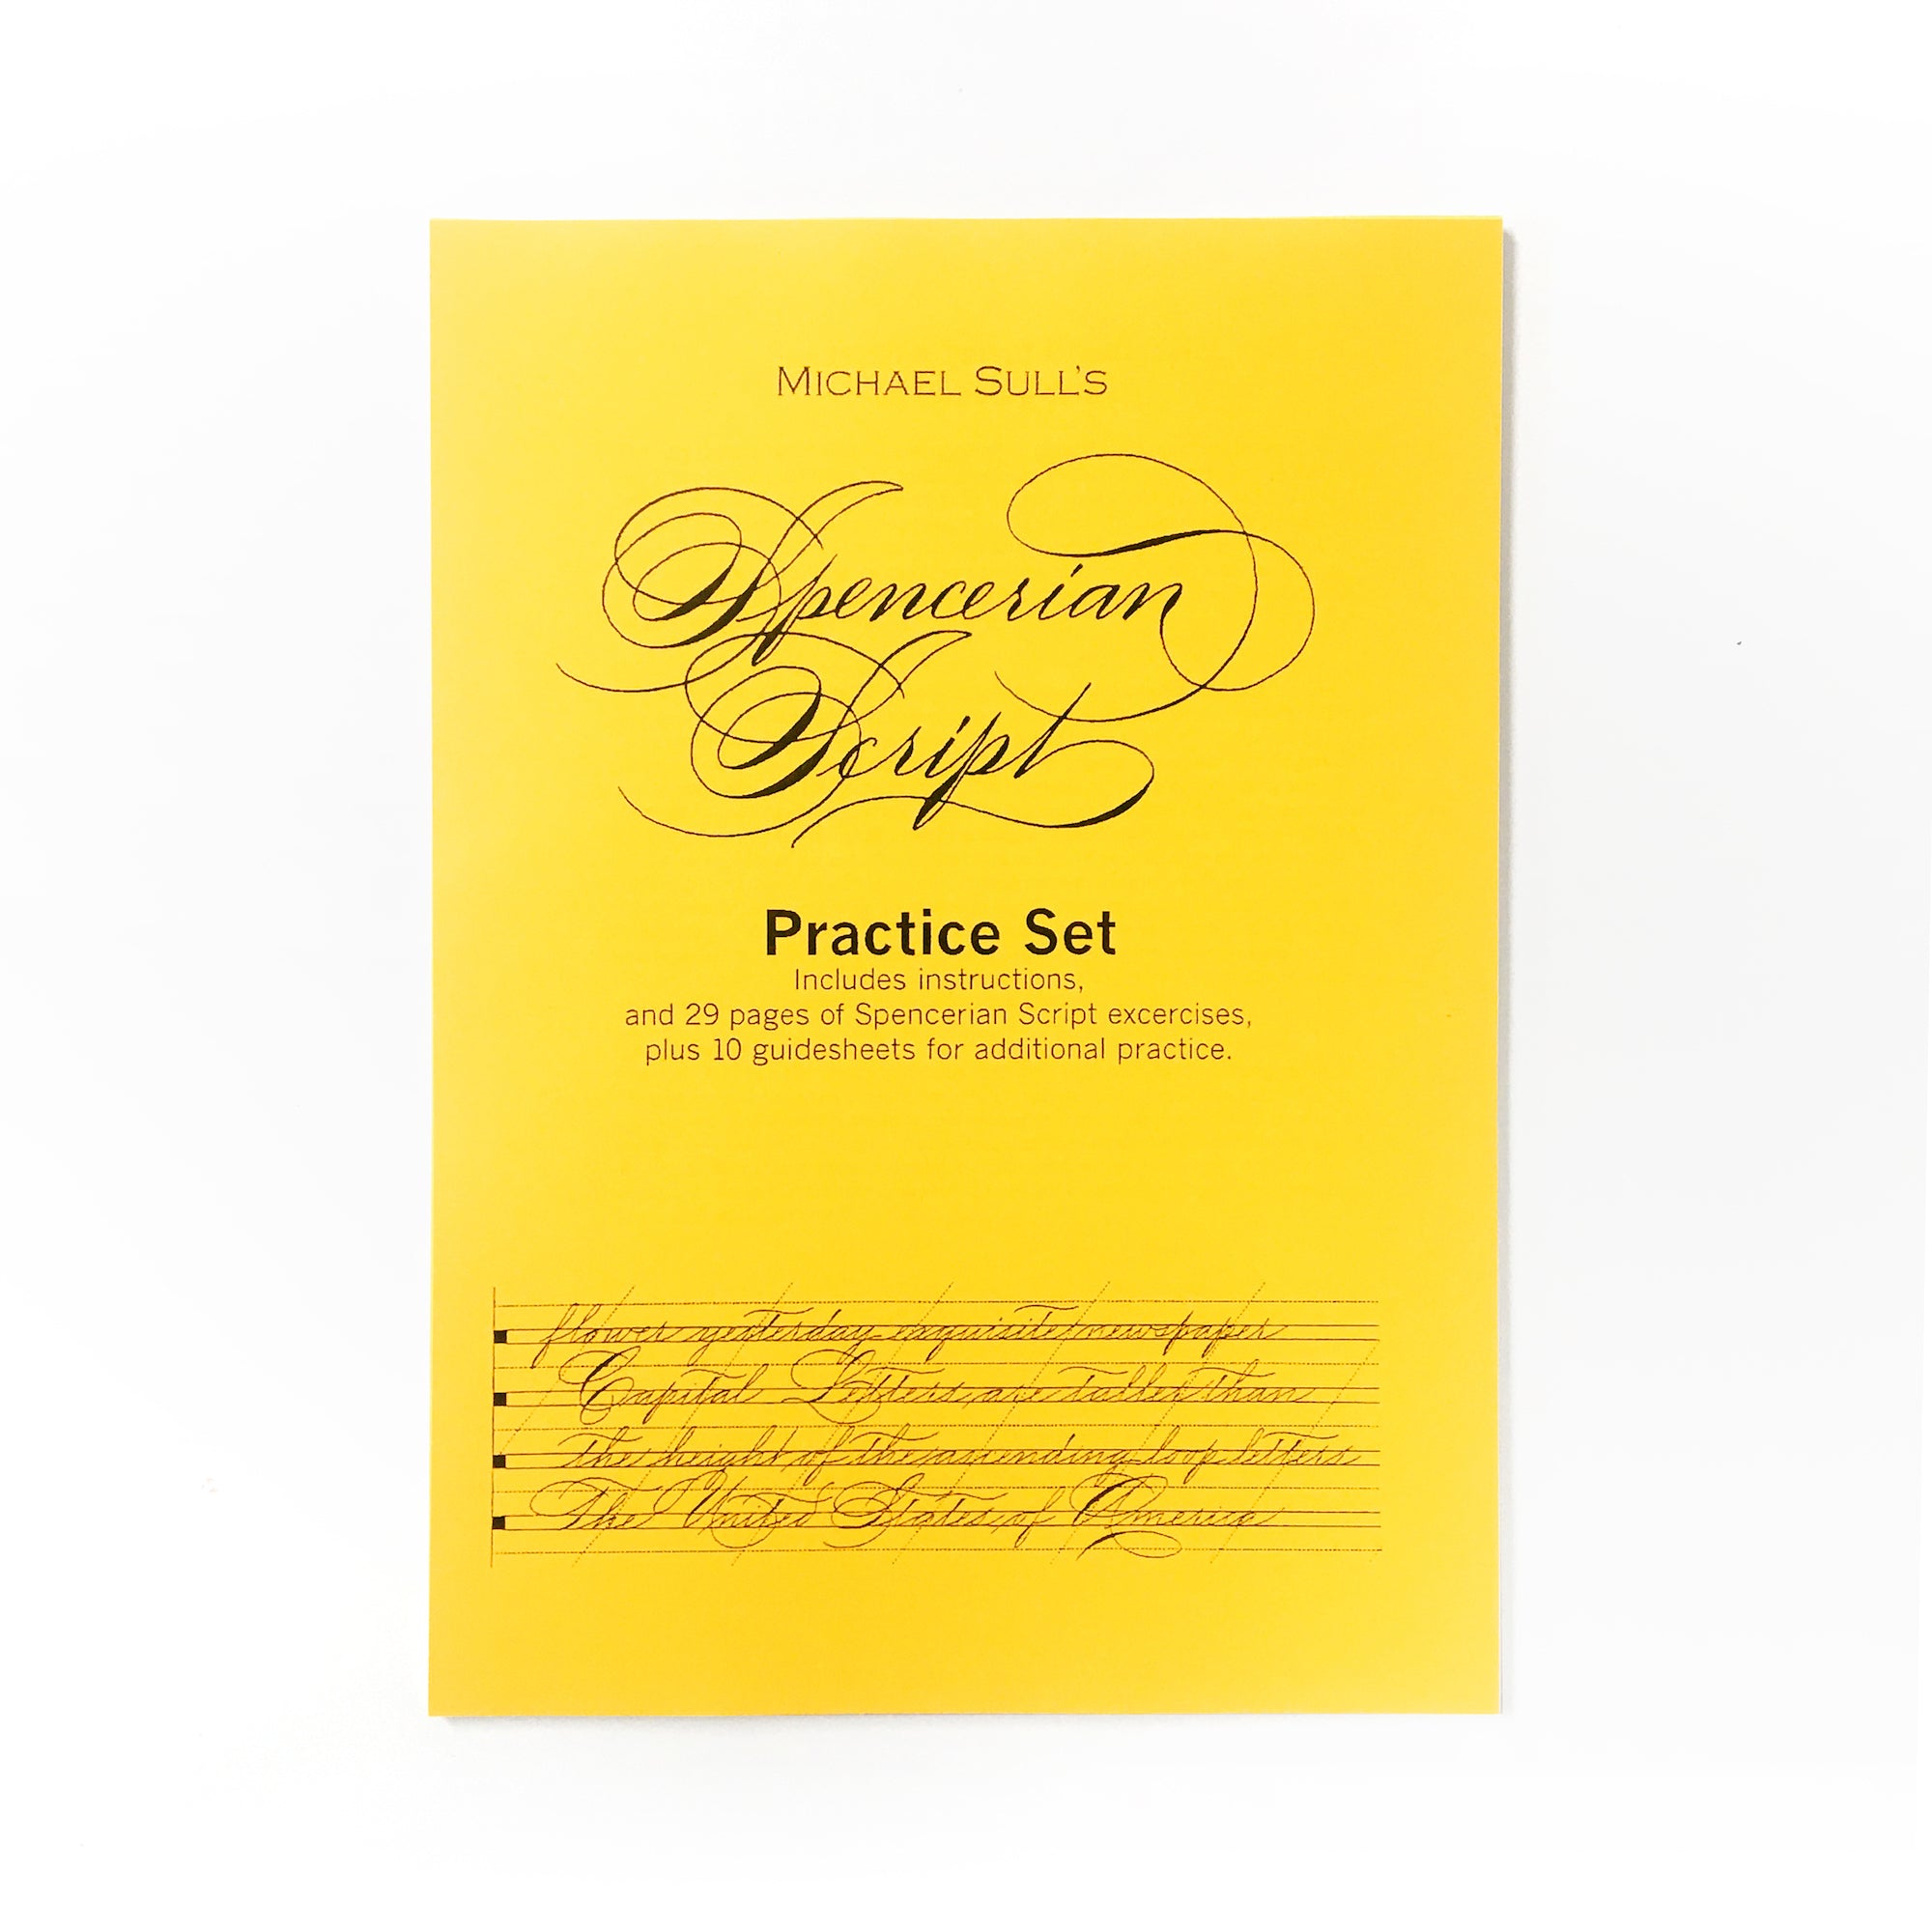 Michael Sull's Spencerian Script Practice Set